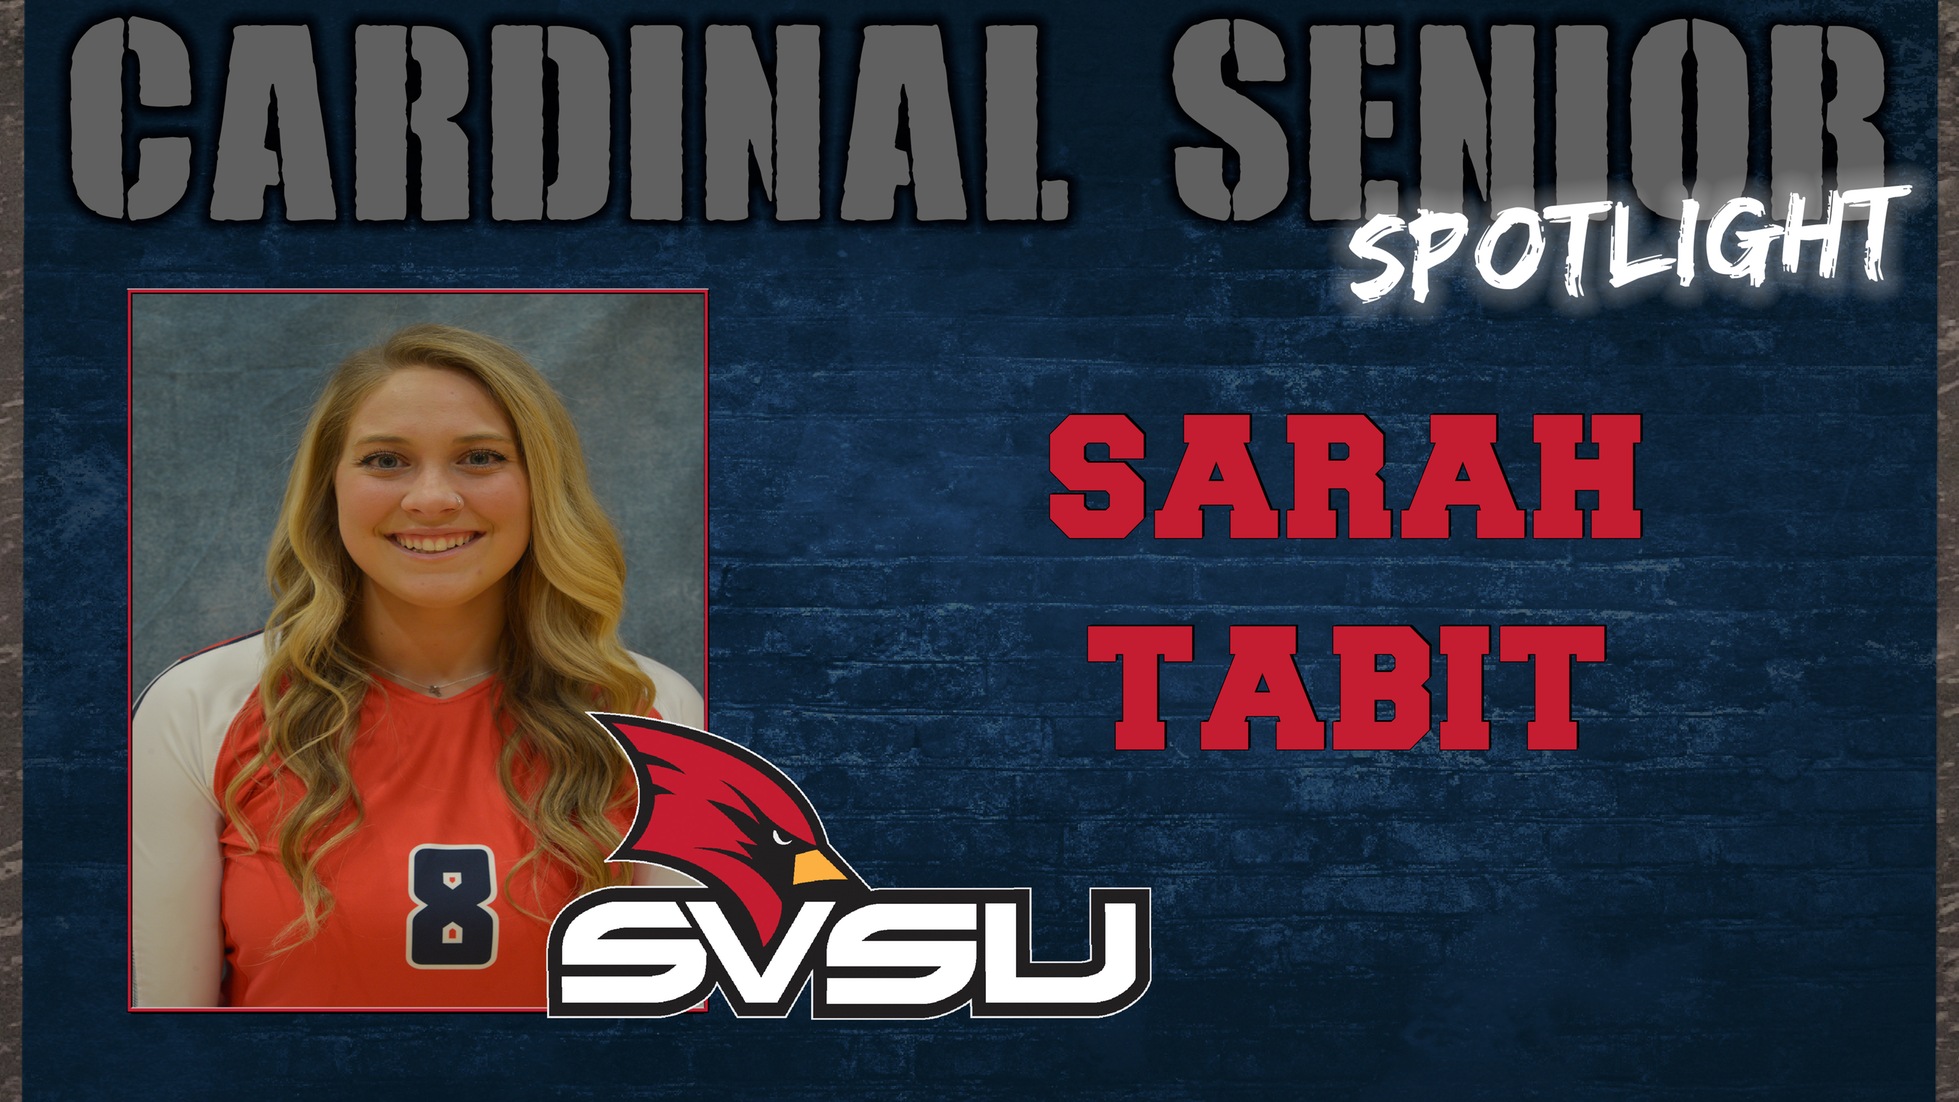 SVSU Cardinal Senior Spotlight - Sarah Tabit